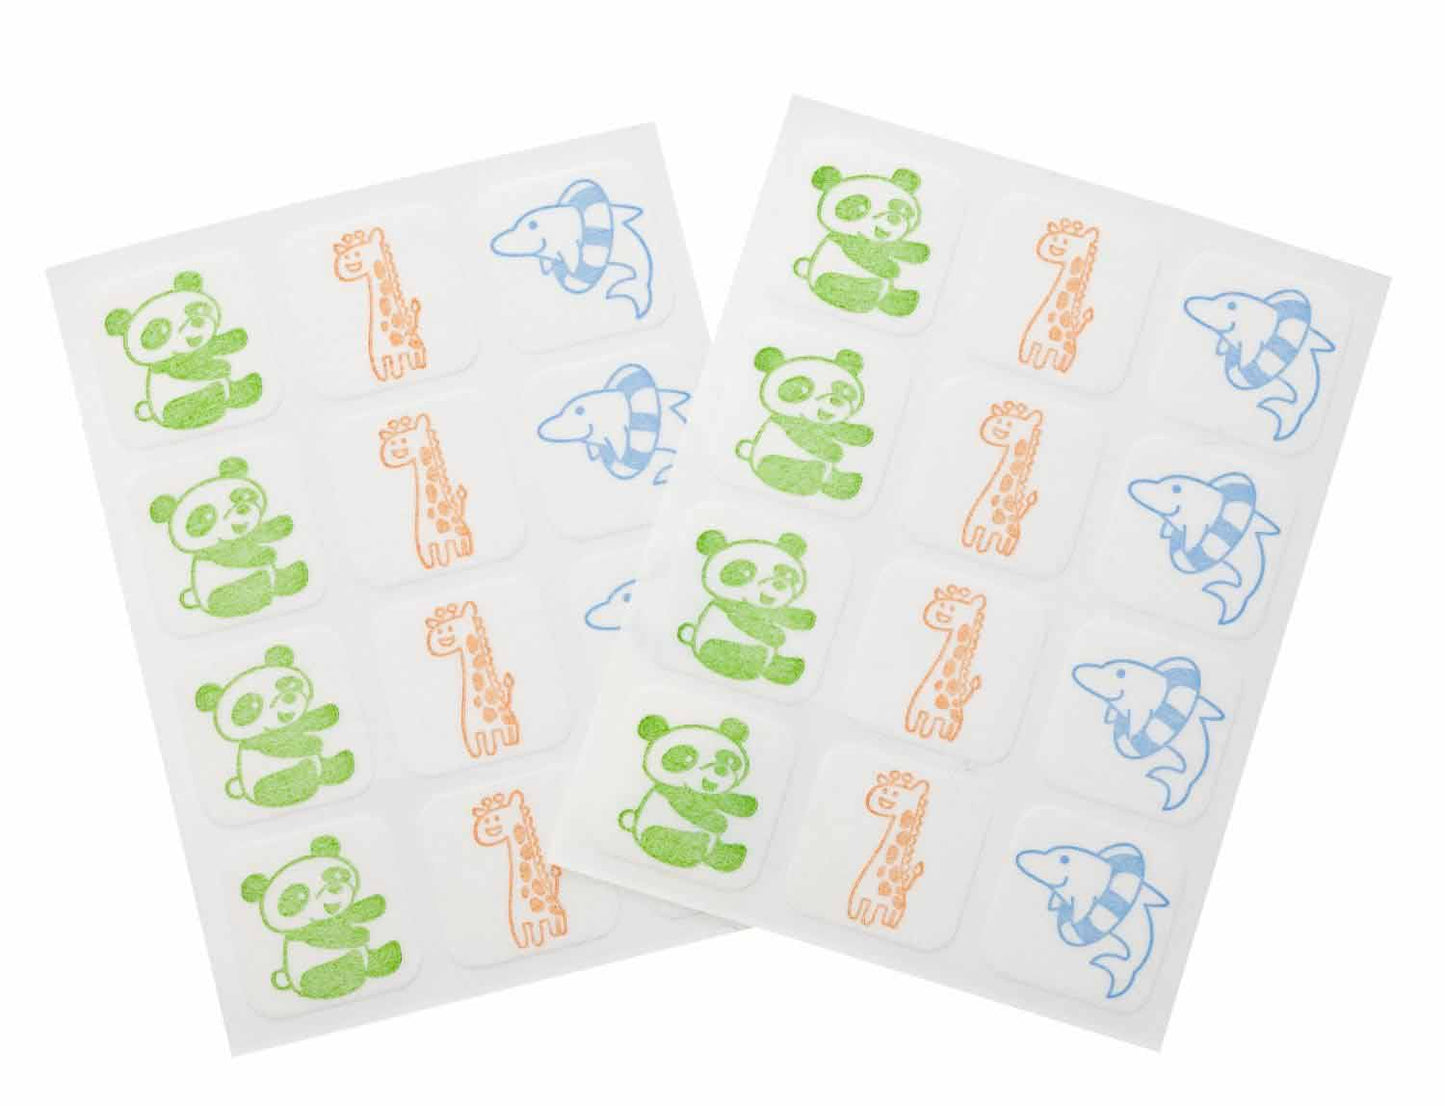 ピジョン 虫くるりん 虫よけ シールタイプ 60枚入 日本製 Pigeon Insect Repellent Stickers 60 count (12 count x 5 sheet) /1 pack Made in Japan